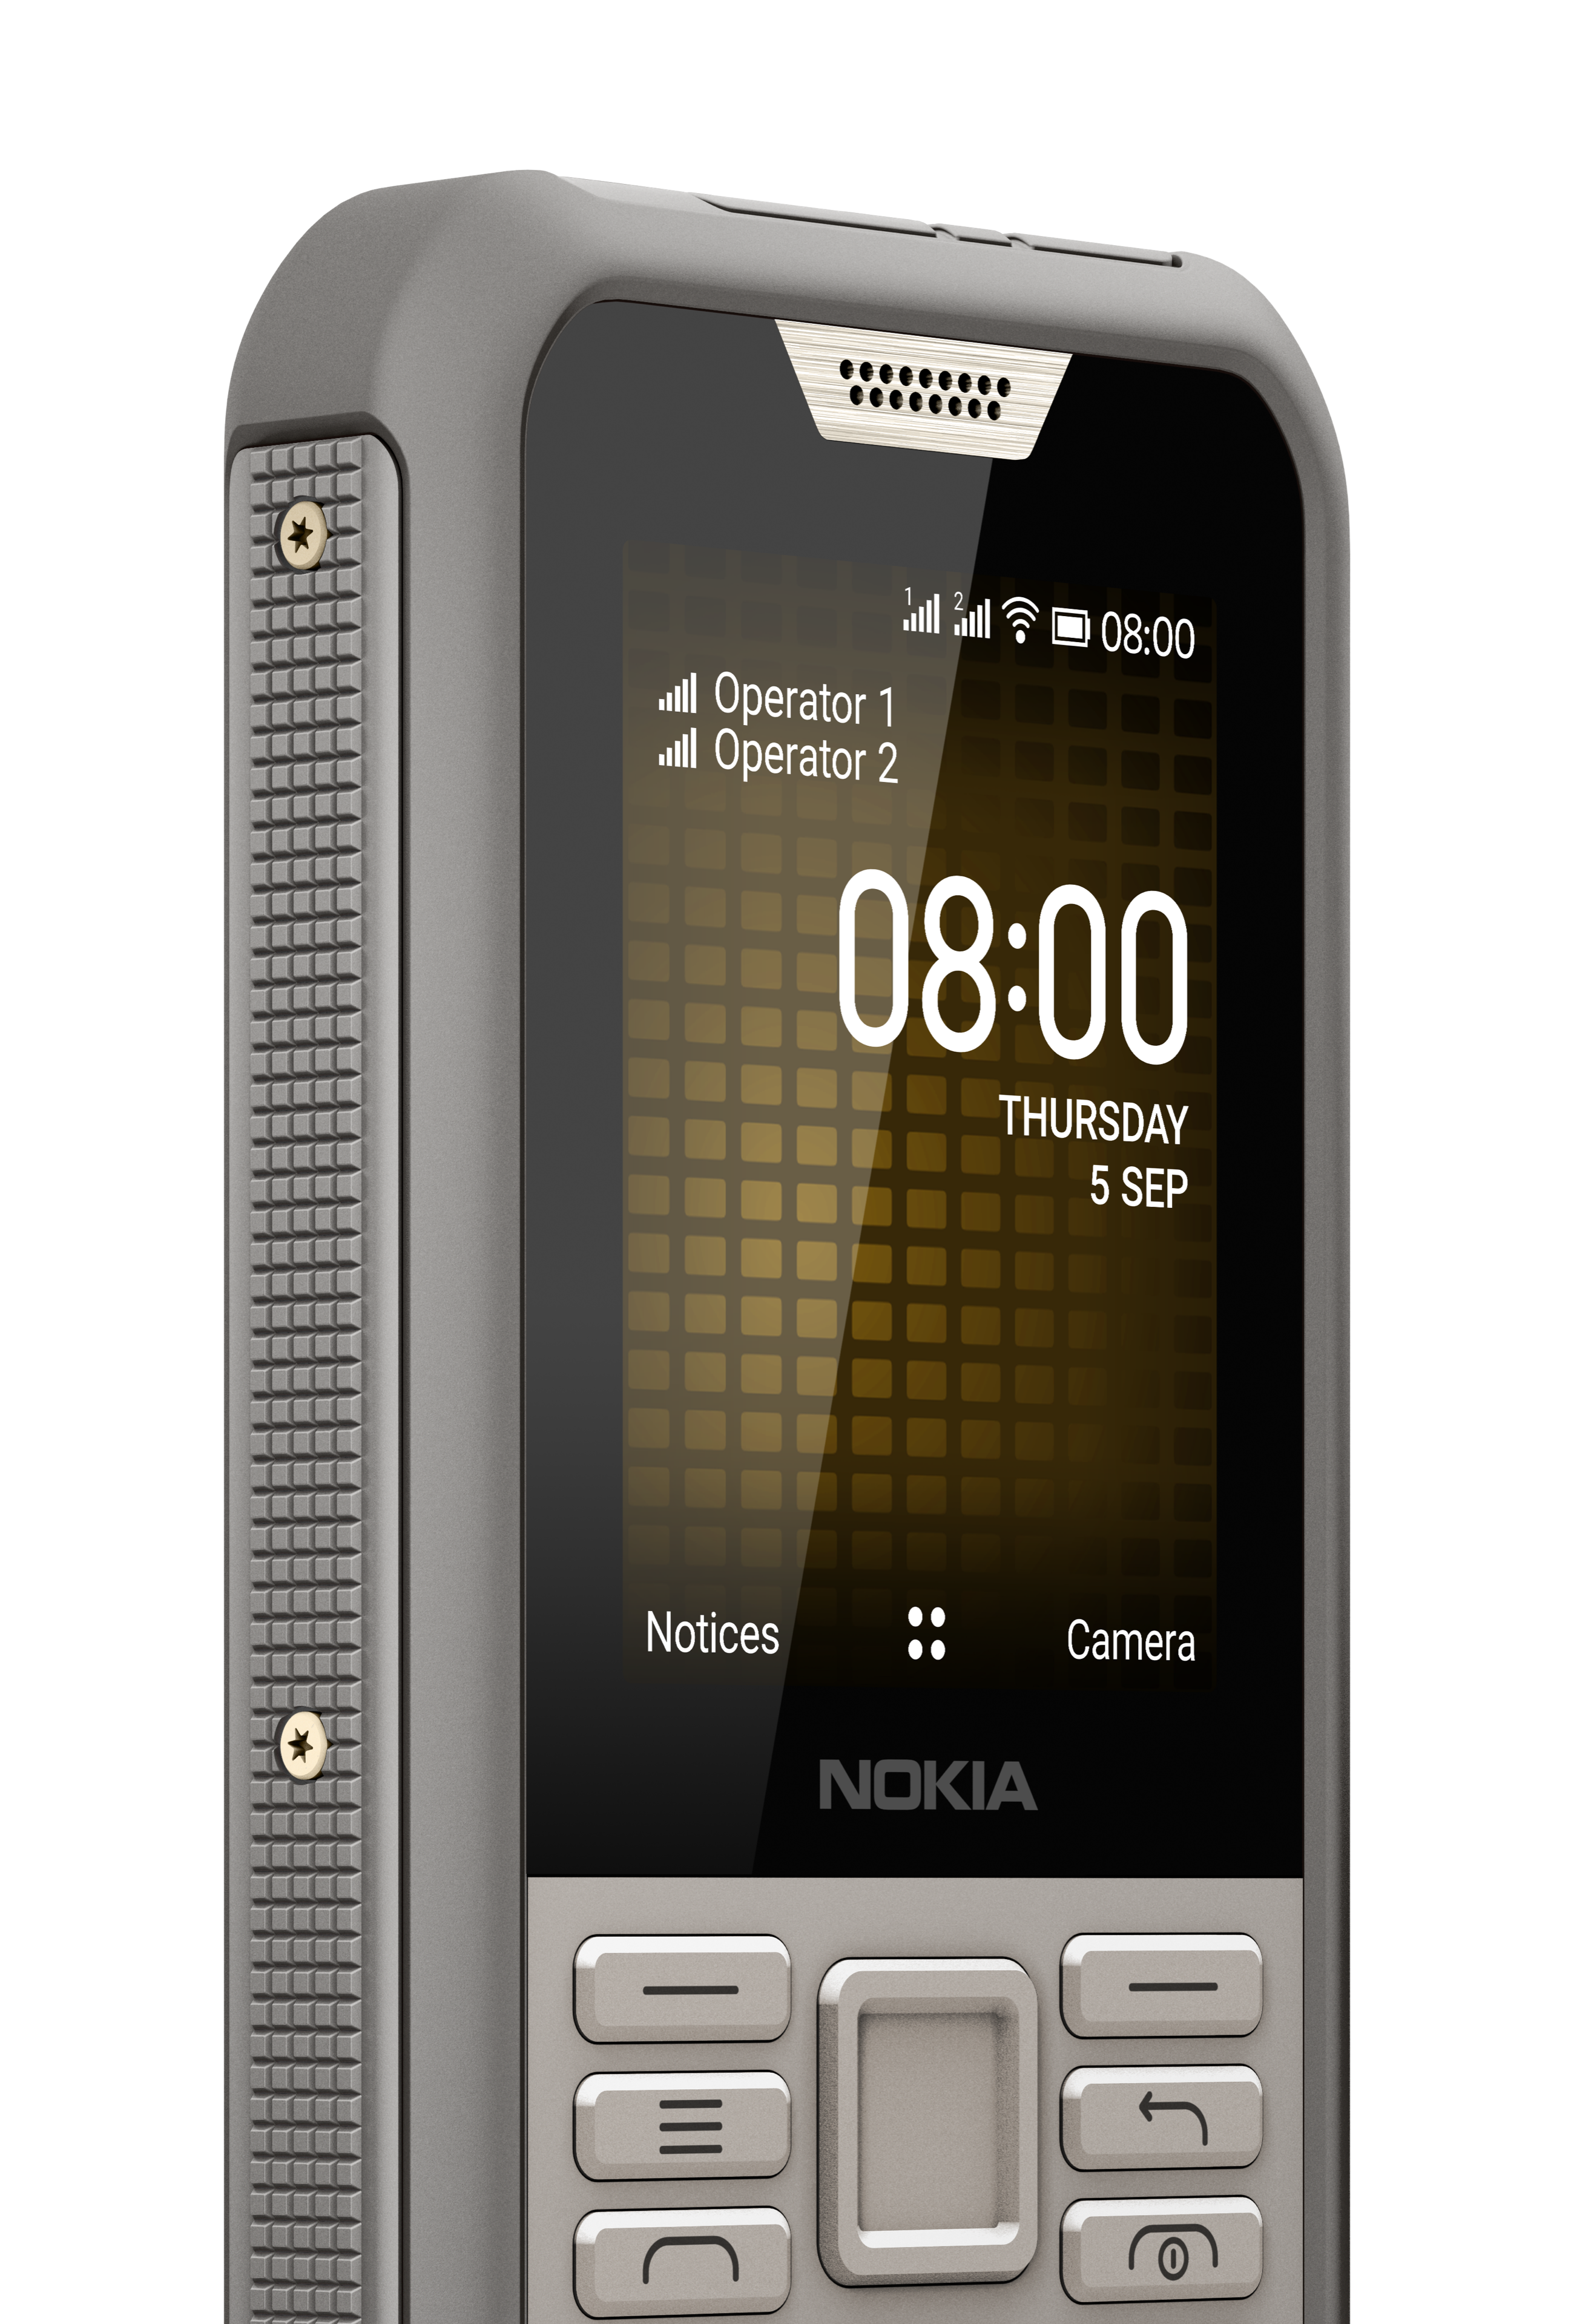 Nokia 800 Tough Outdoor mobile phone Sand - Conrad.com